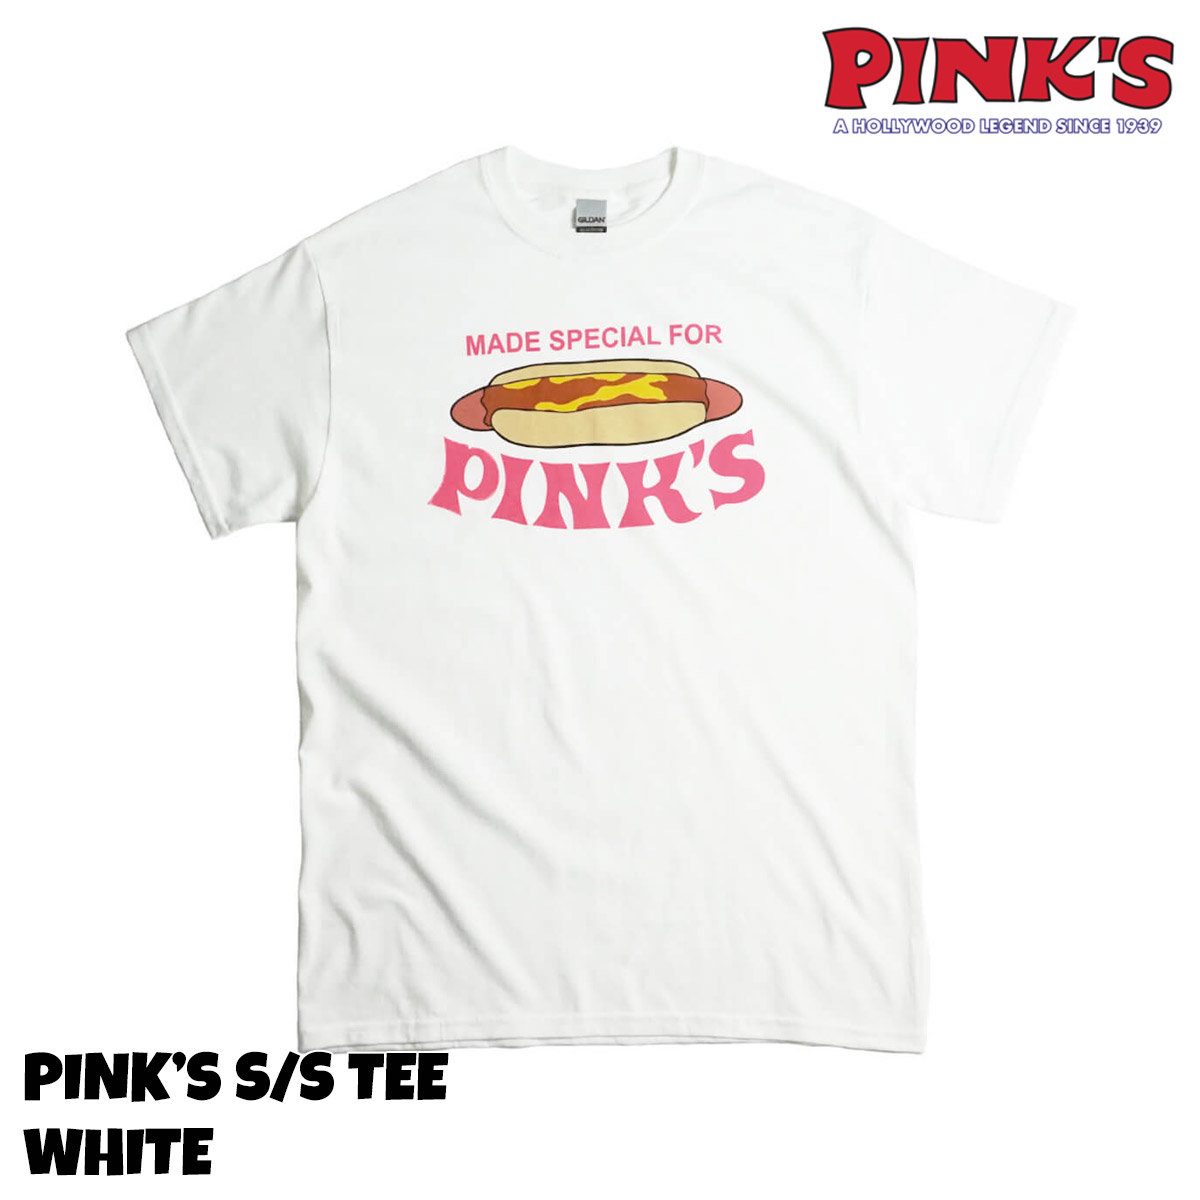 ピンクス ホットドッグス PINK’S HOTDOGS 半袖 Tシャツ 別注 ピンクスフロントプリントメンズ S-XXL 海外買い付け ご当地